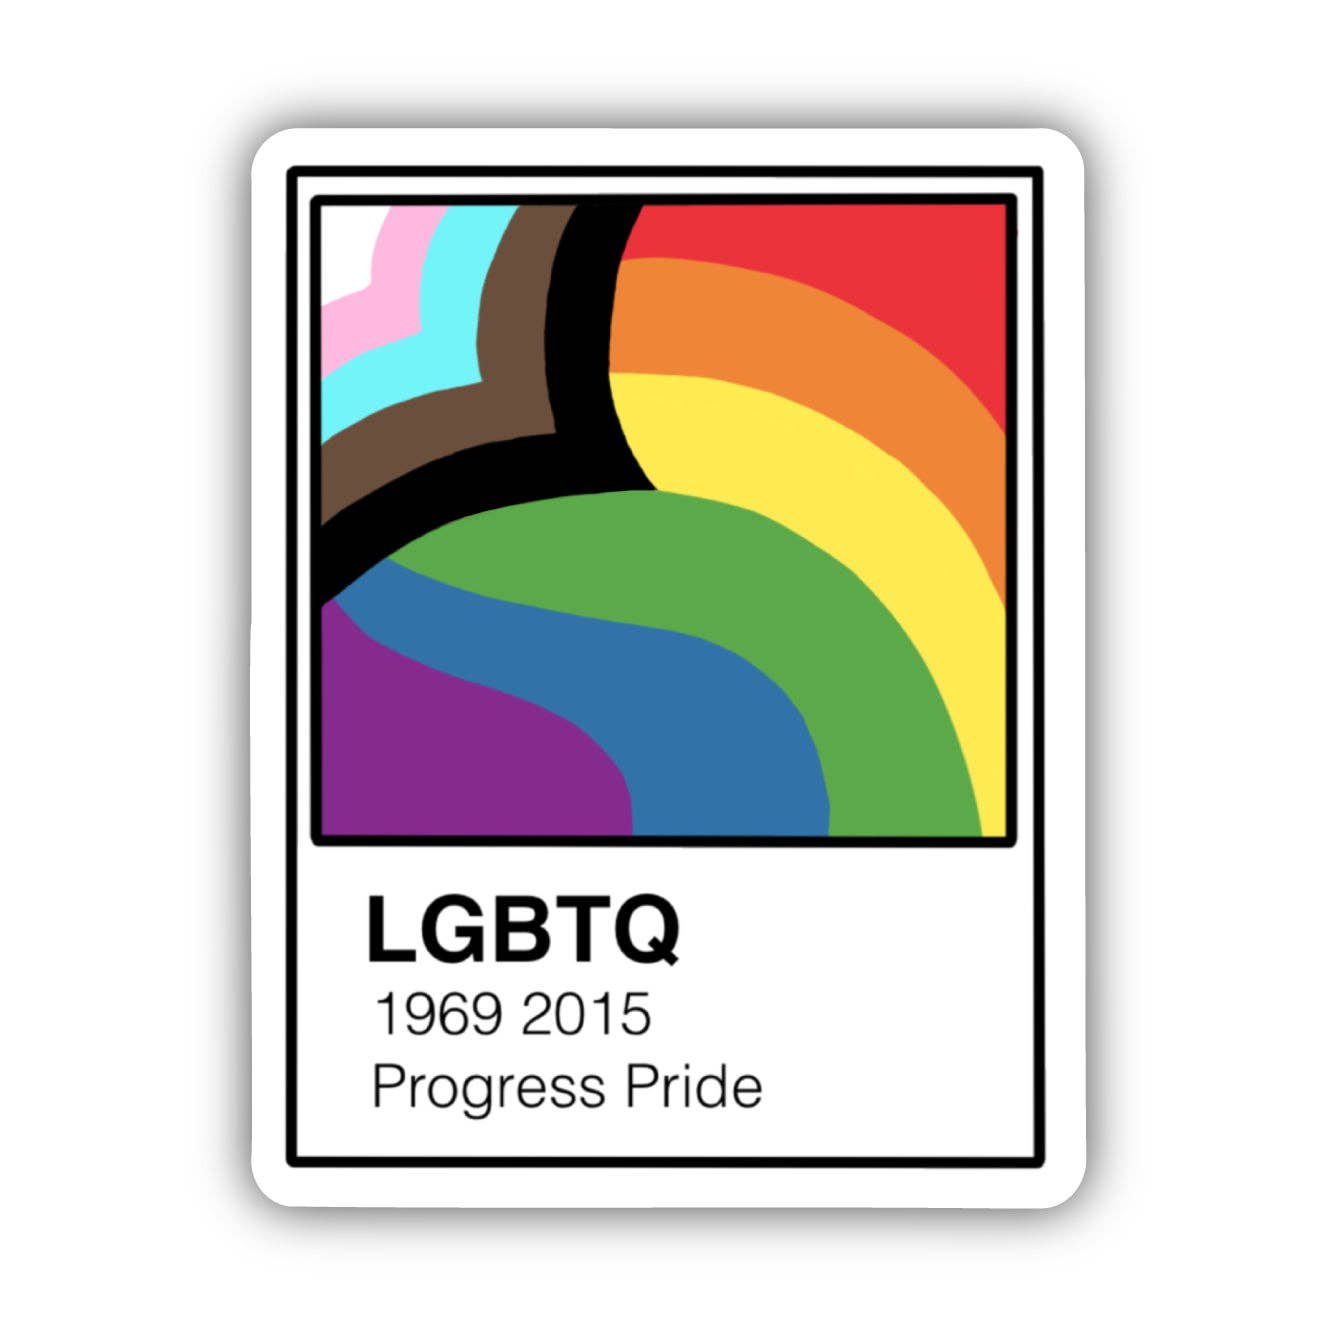 LGBTQ Progress Pride Paint Swatch Sticker